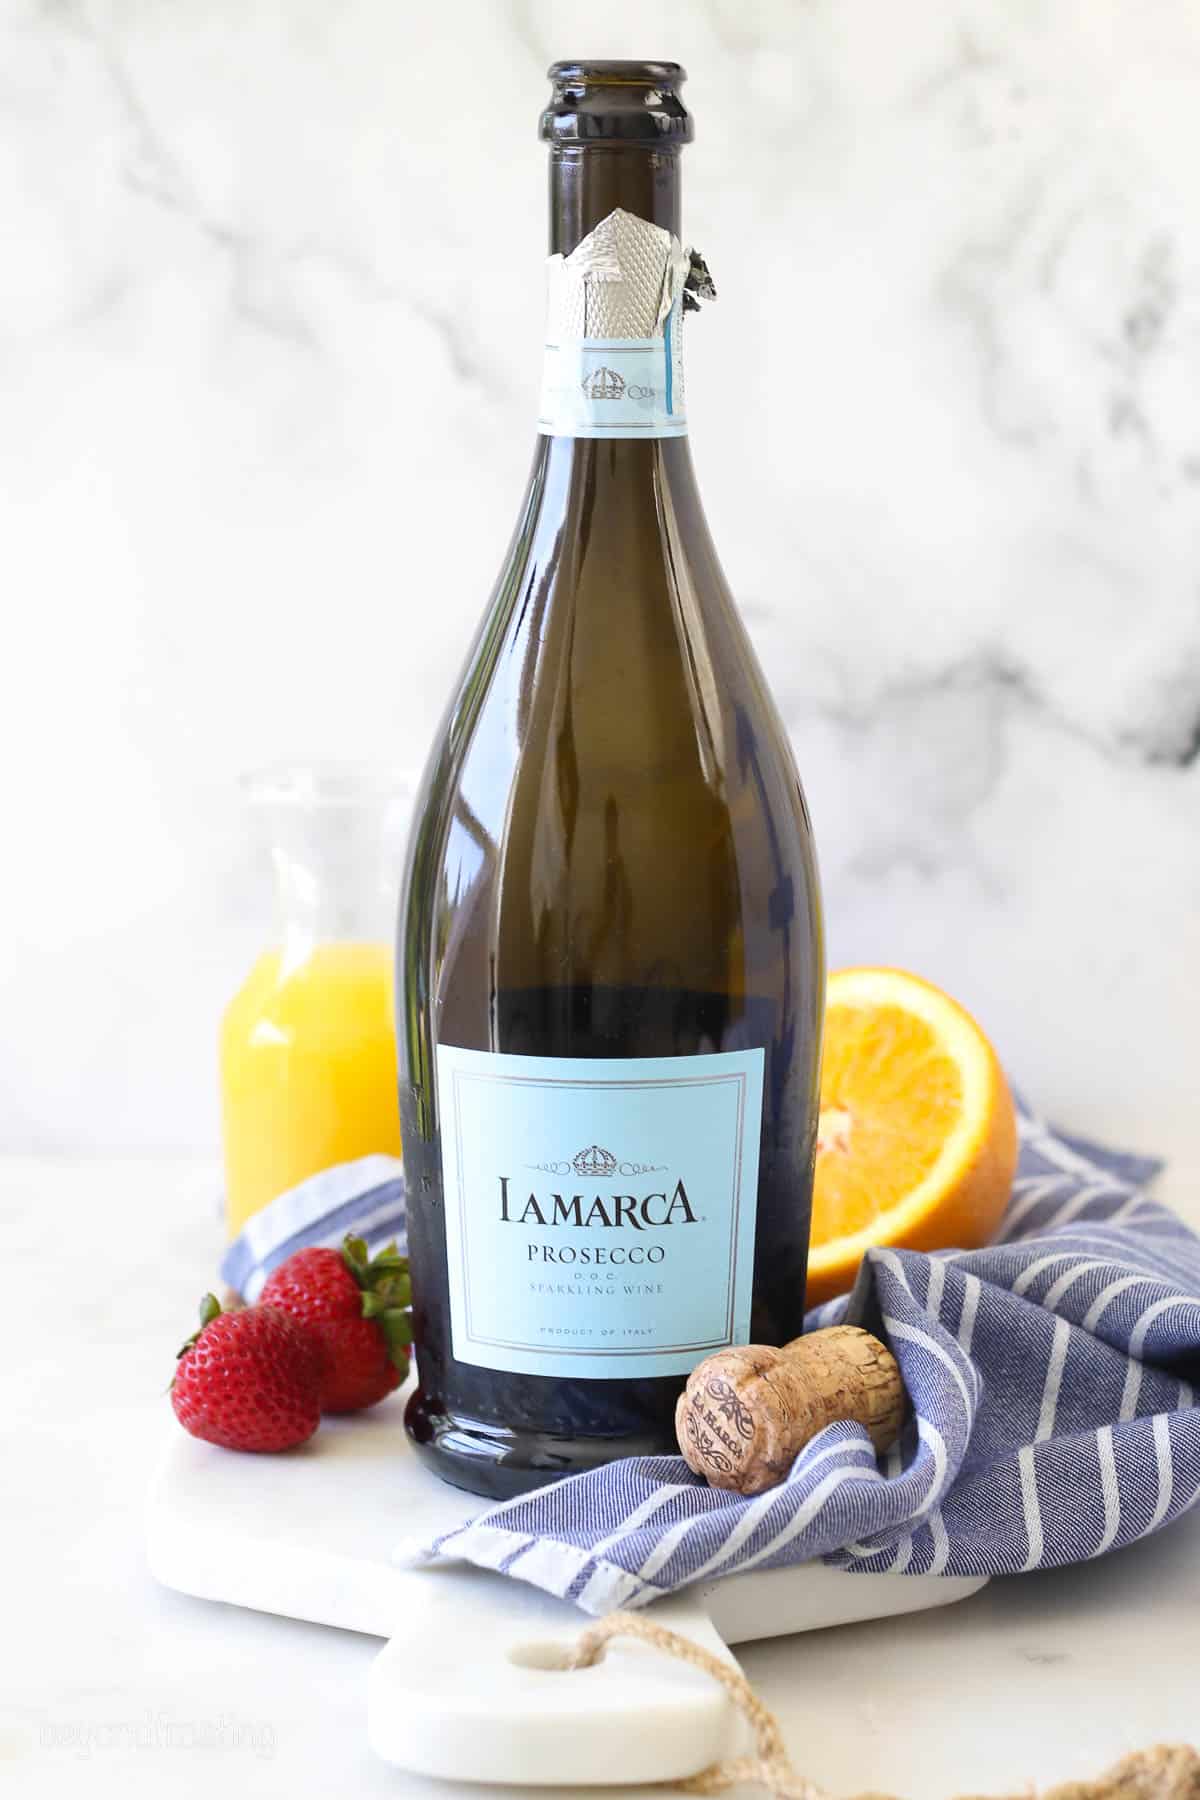 An open bottle of LaMarca prosecco